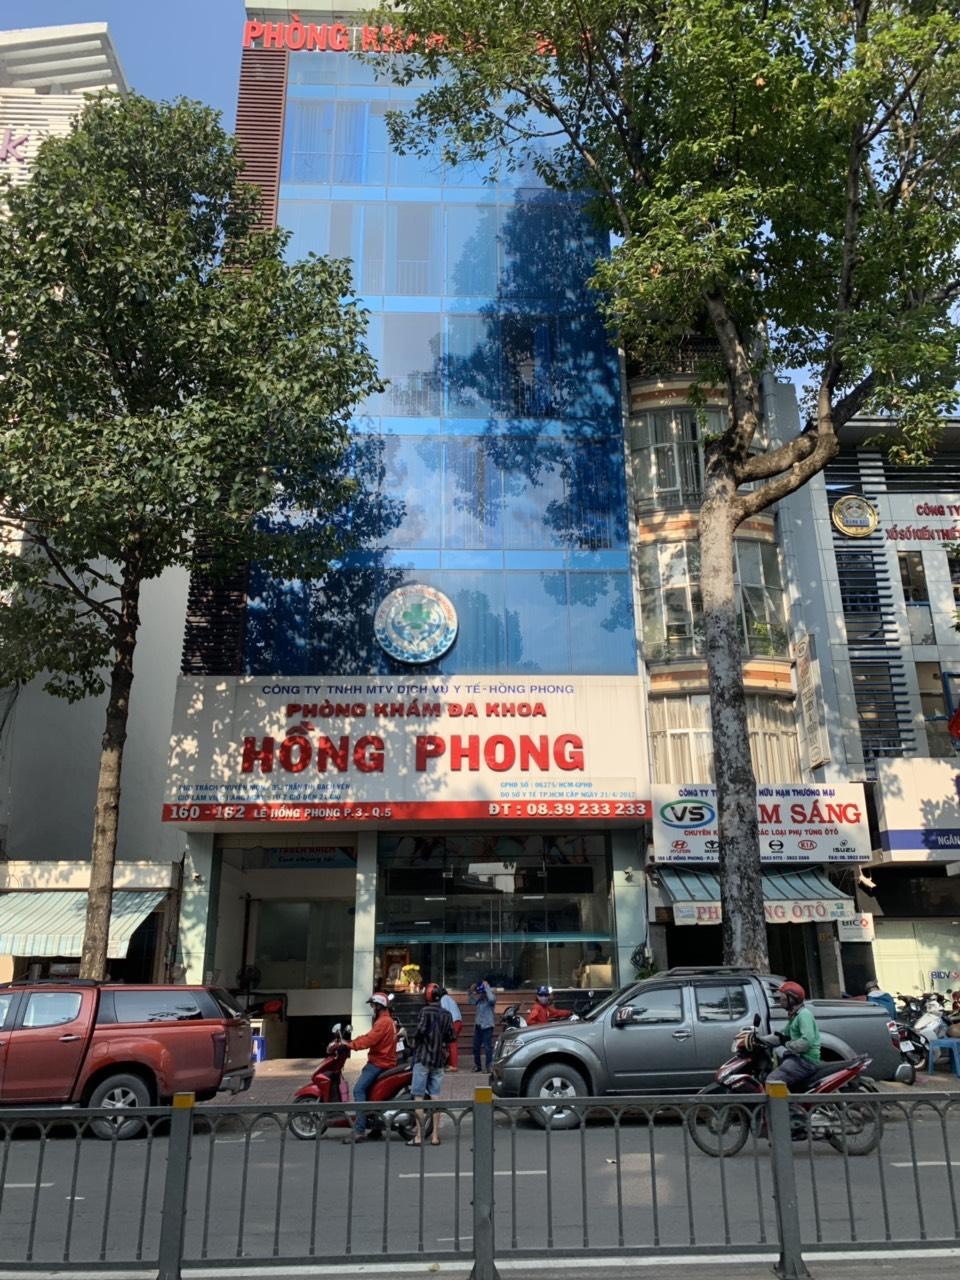 Chính chủ bán nhà 135 - 137 Trần Bình Trọng, P2, quận 5, hầm 9 tầng, giá: 53 tỷ